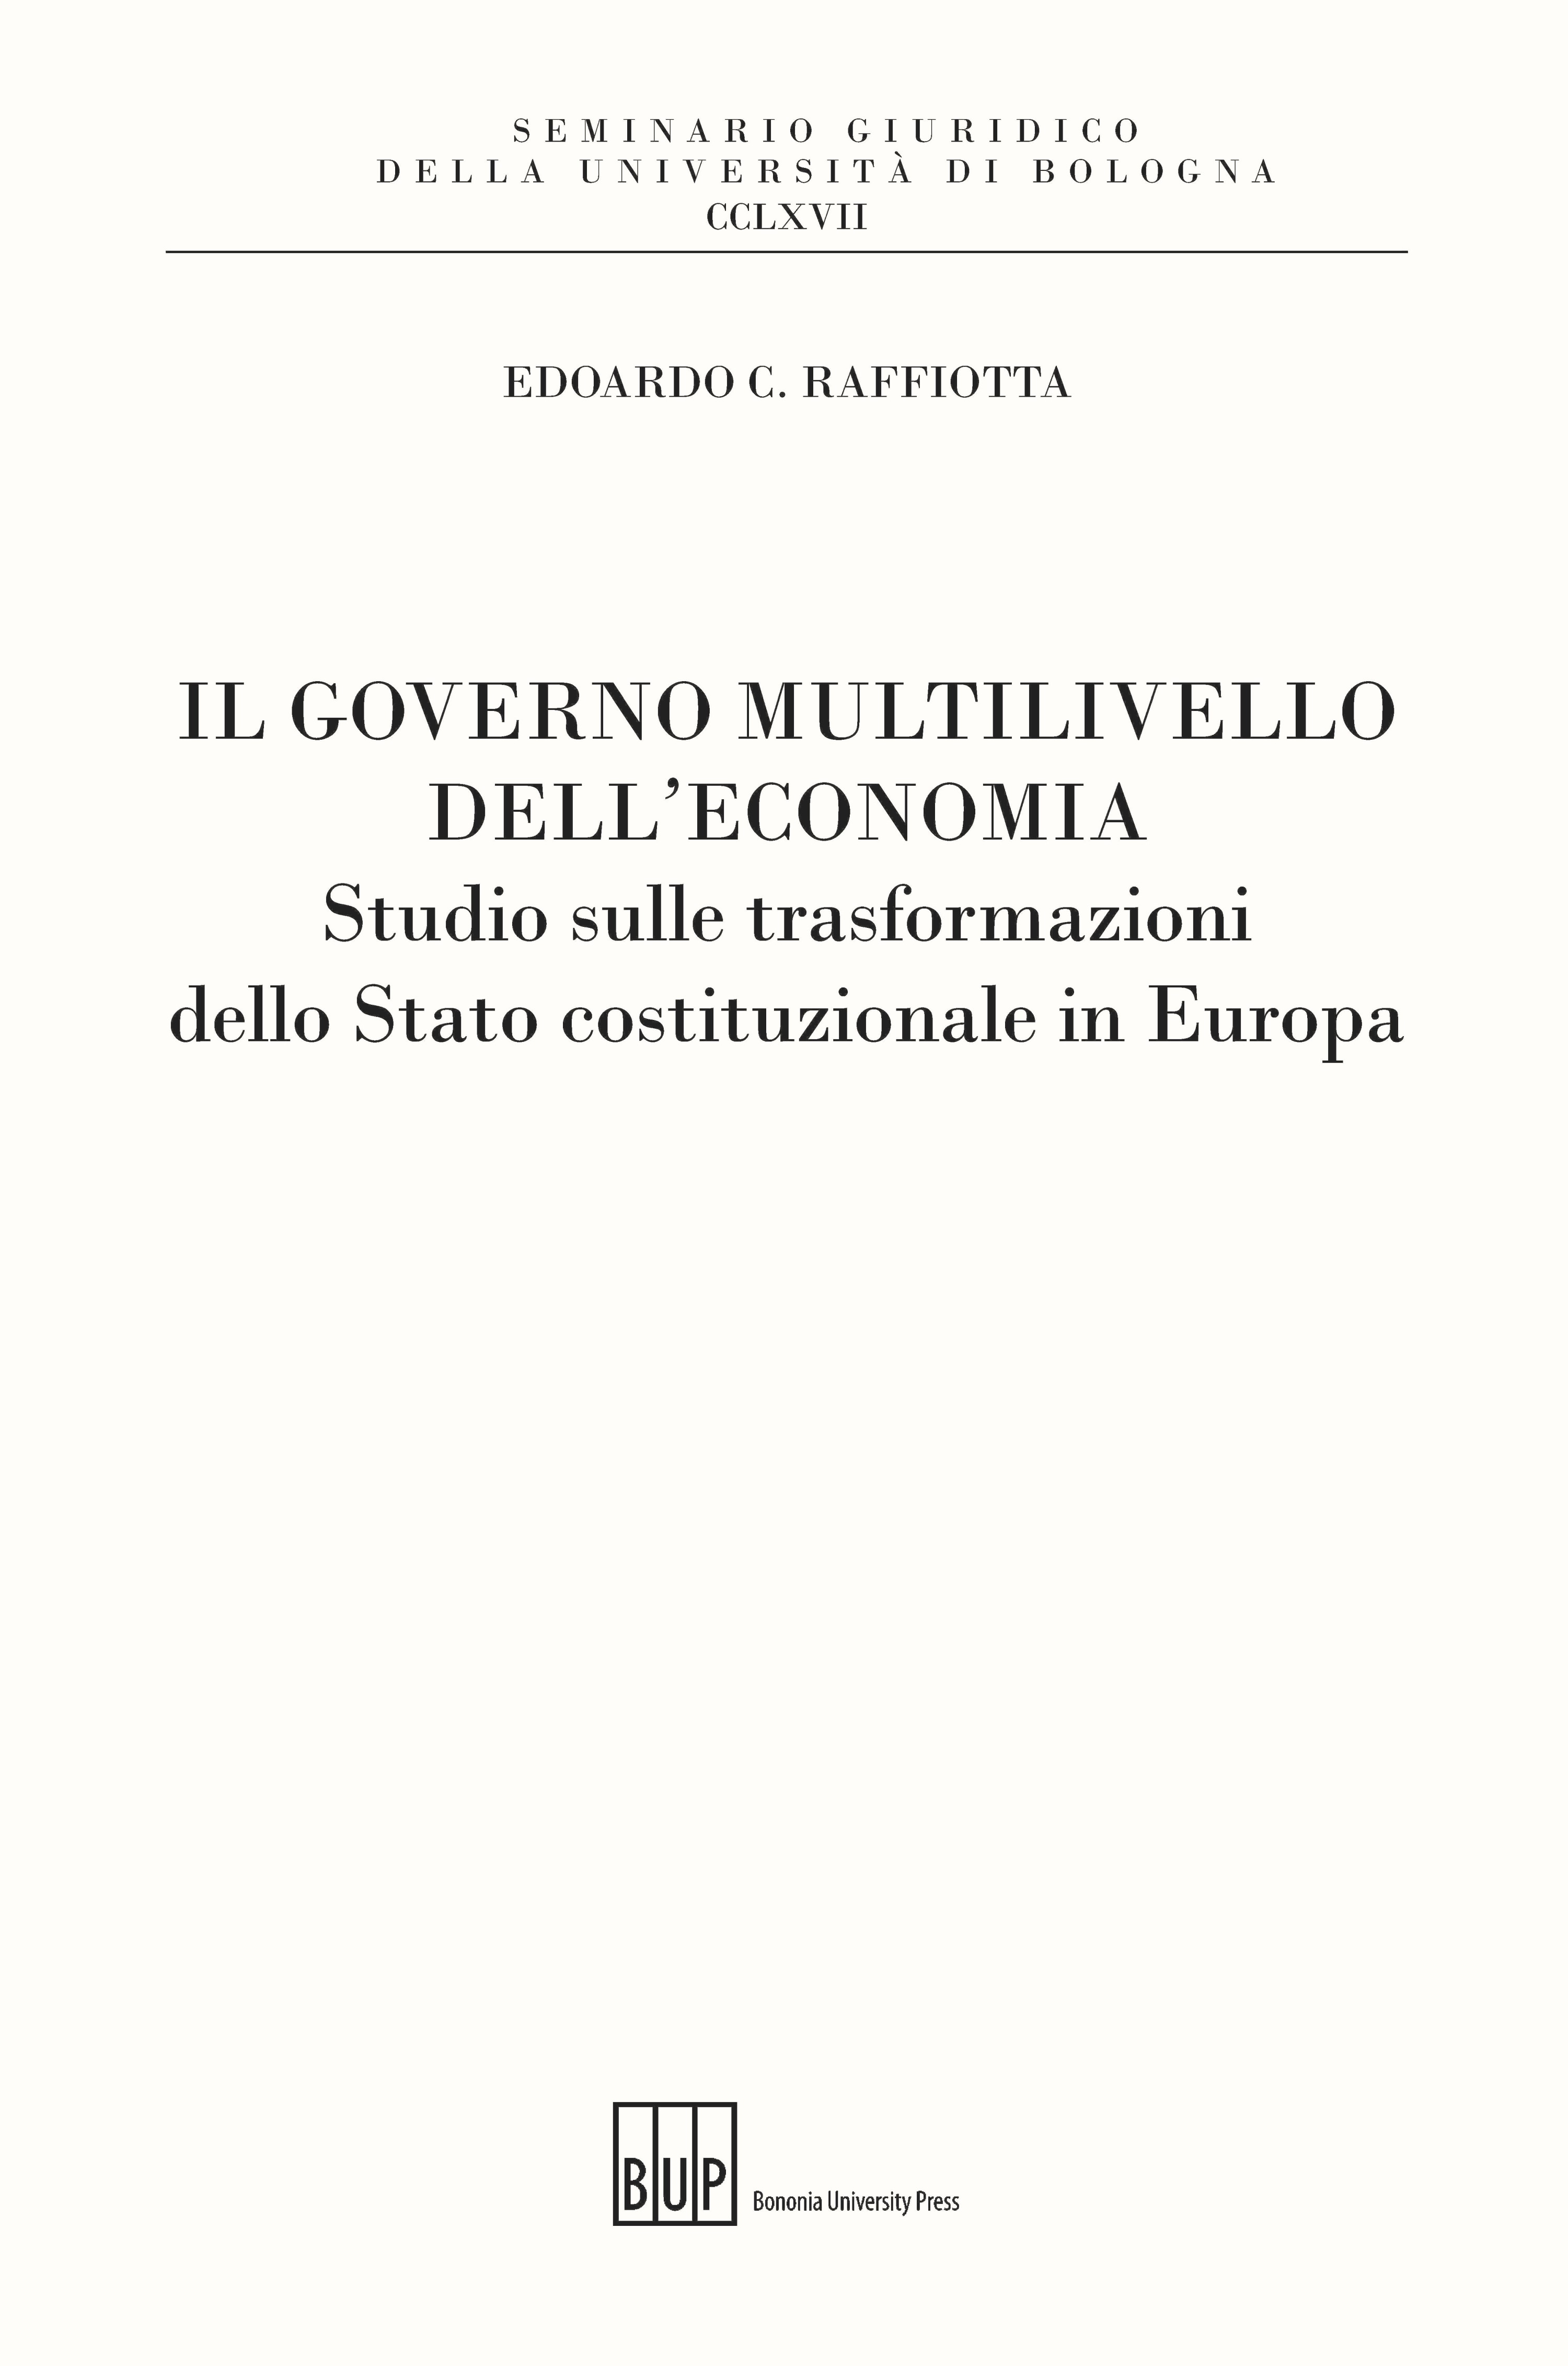 Il governo multilivello dell'economia - Bologna University Press